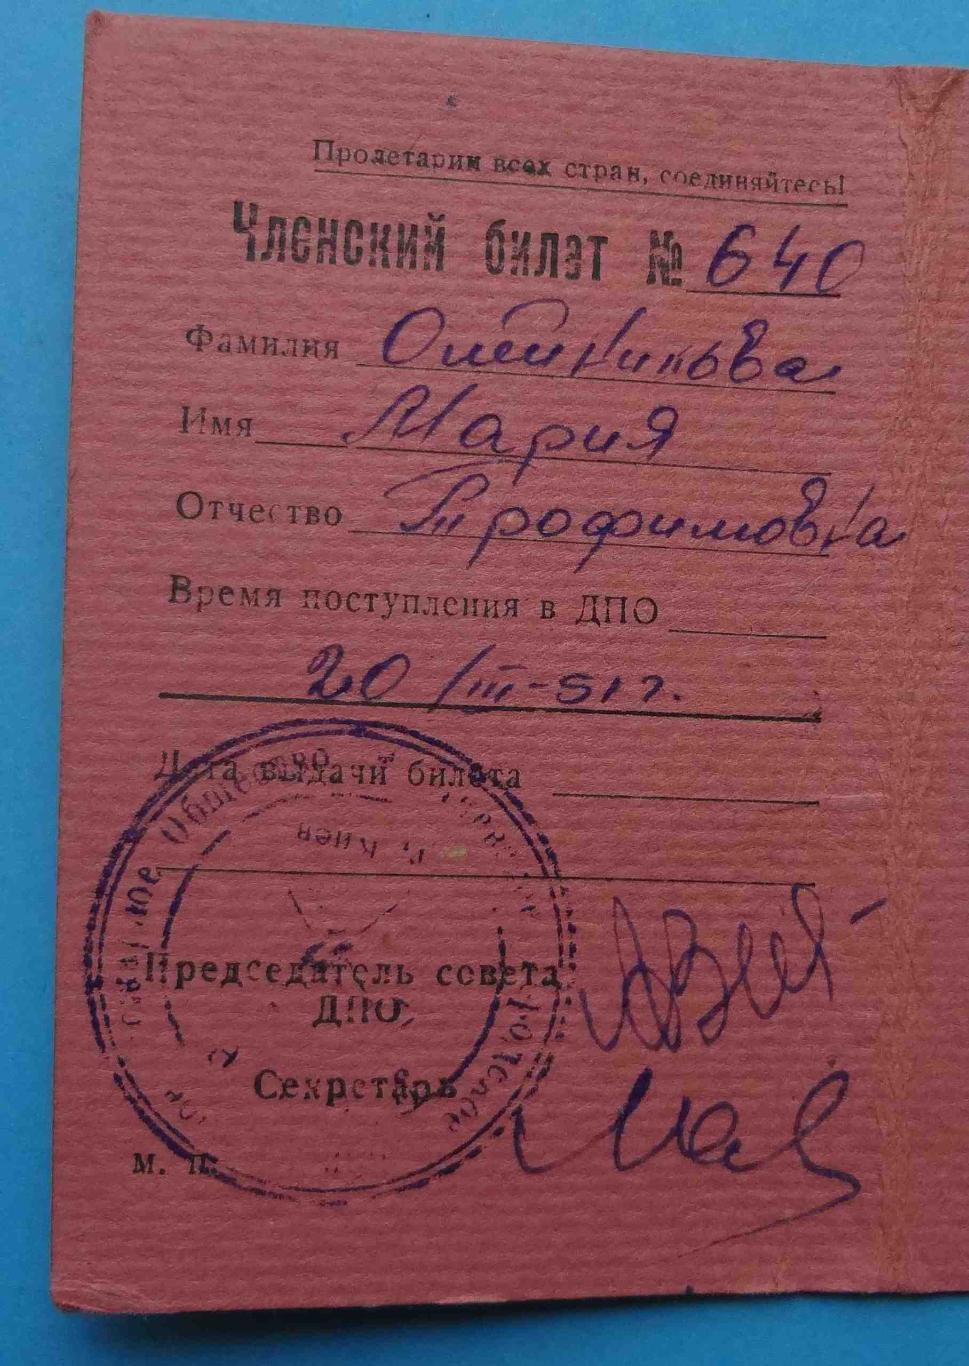 Членский билет Киевское Городское Добровольное Пожарное Общество 1951 на женщину 2